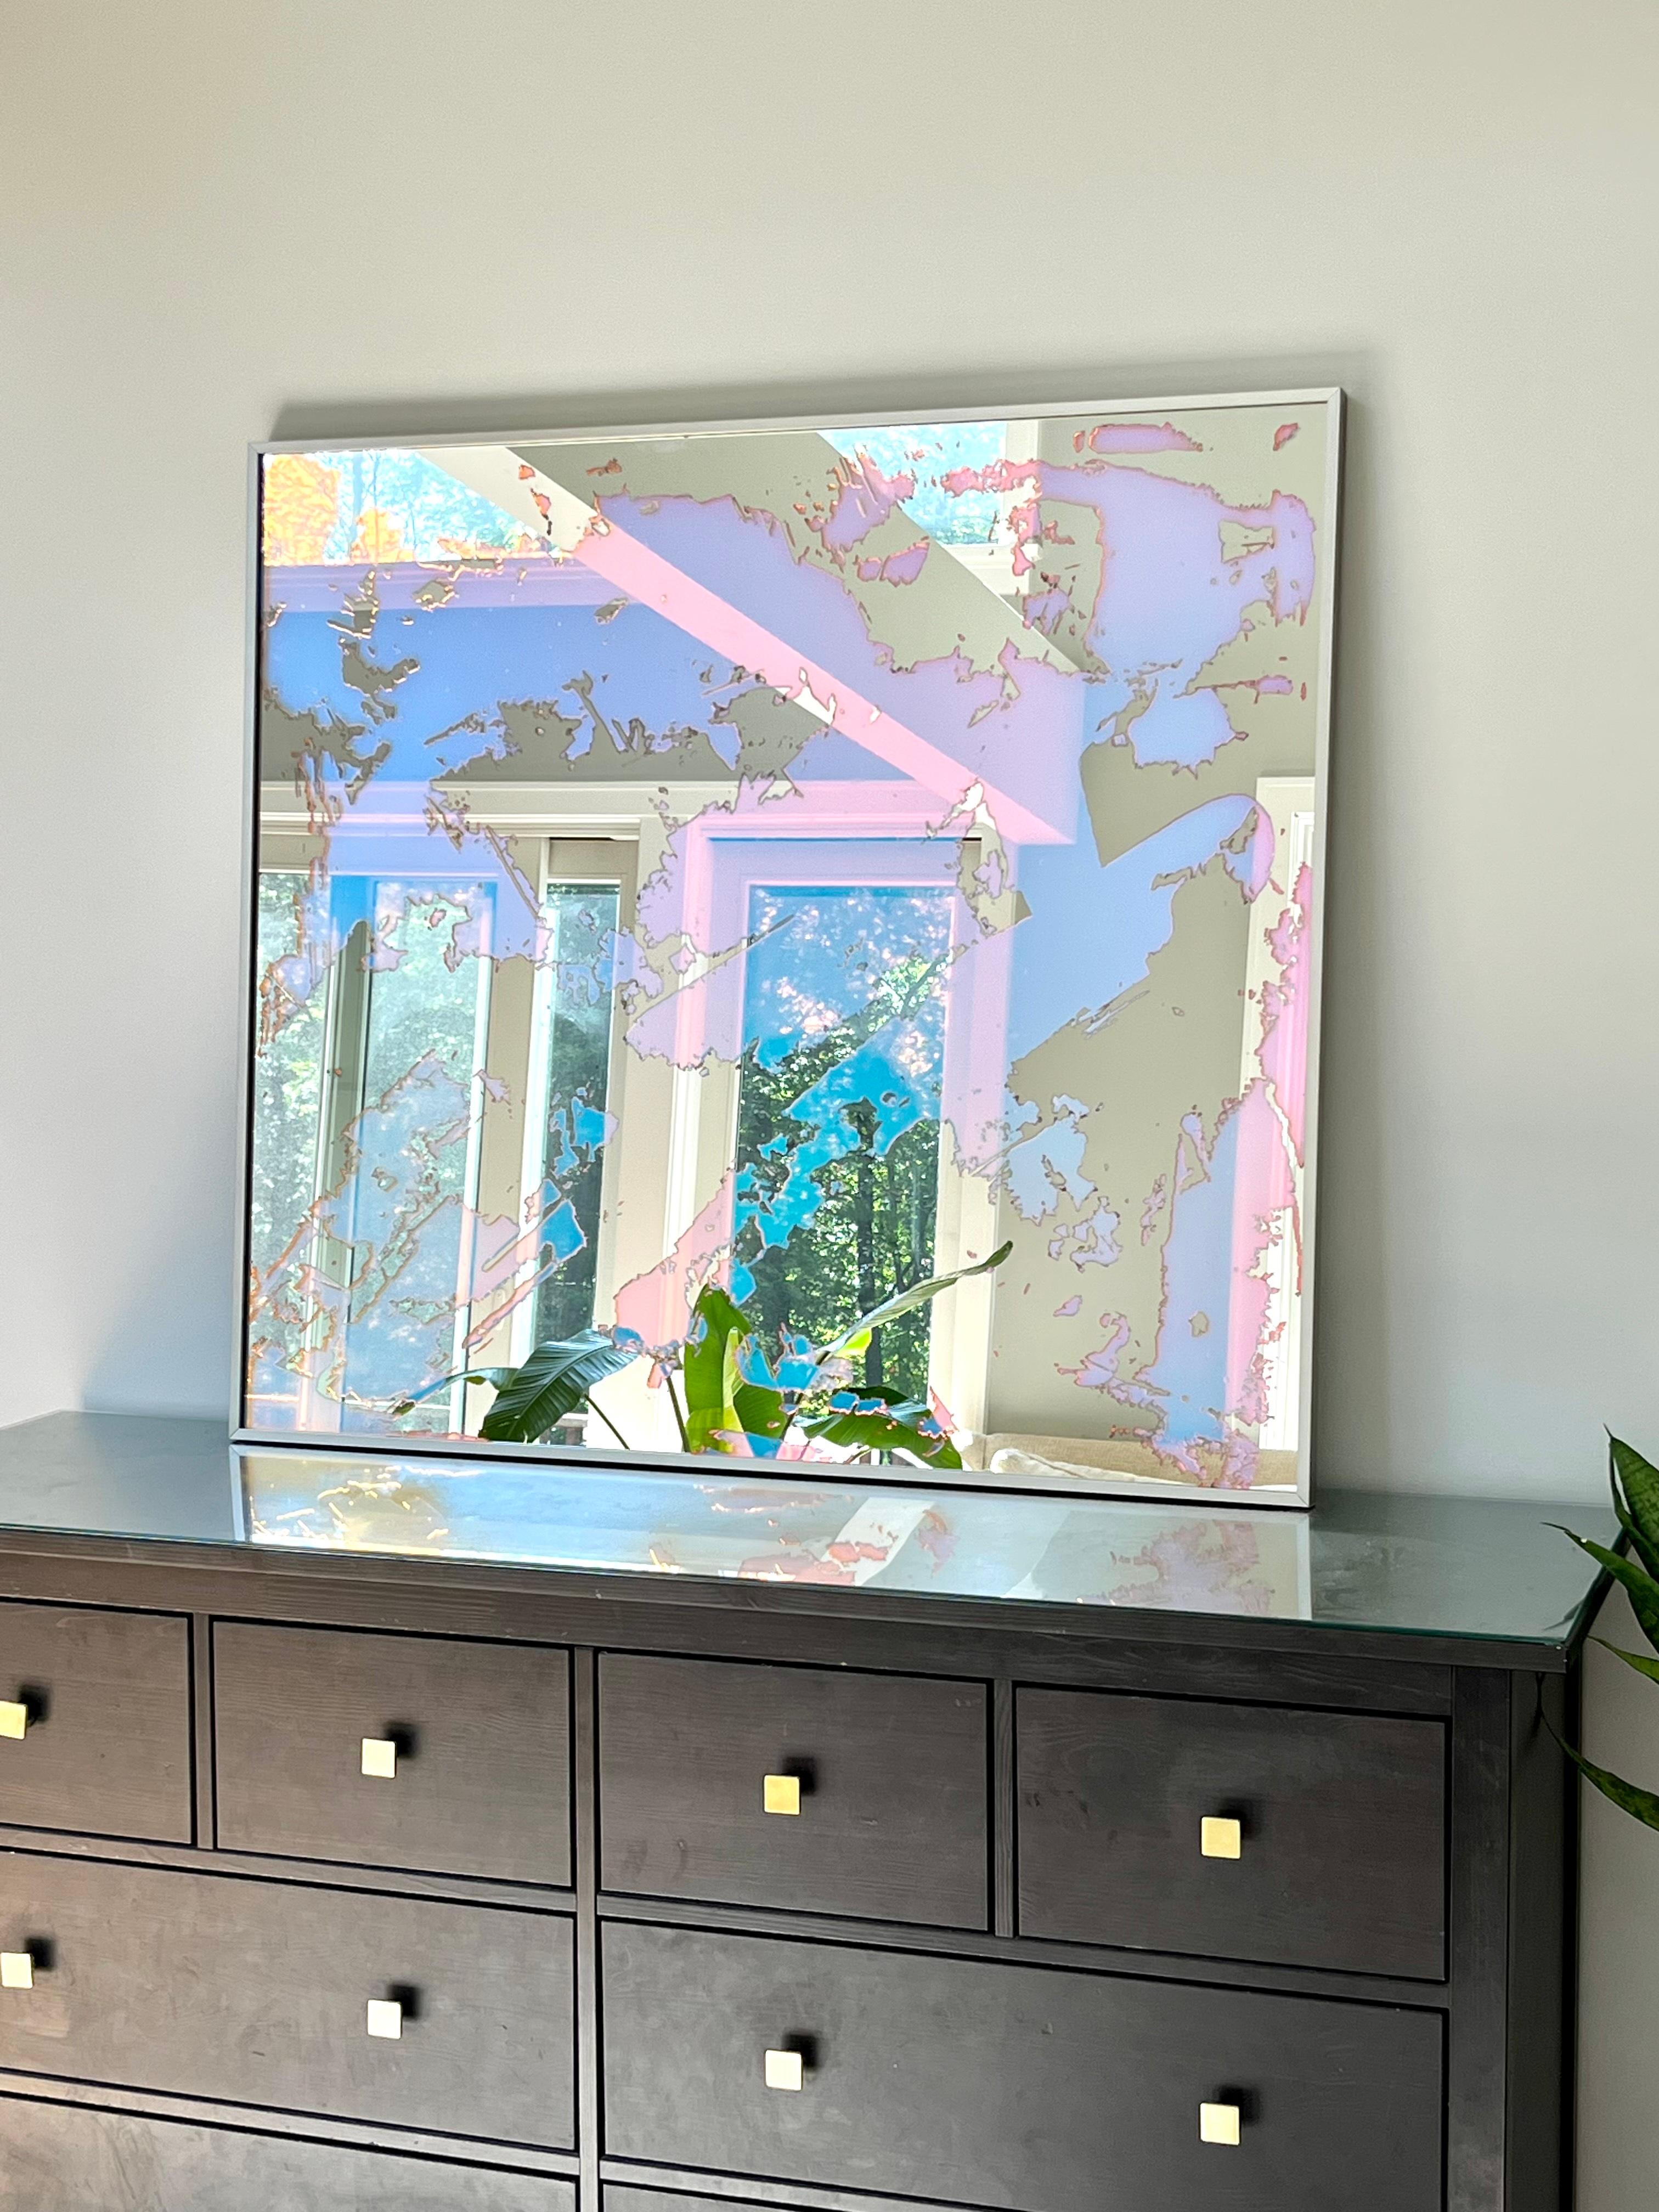 Ce miroir d'art abstrait d'Alina B est réalisé avec un film dichroïque sur miroir, et est encadré dans un cadre aux tons champagne. Le film sur le miroir permet à celui-ci, ainsi qu'à l'espace qu'il reflète, de sembler changer de couleur en fonction